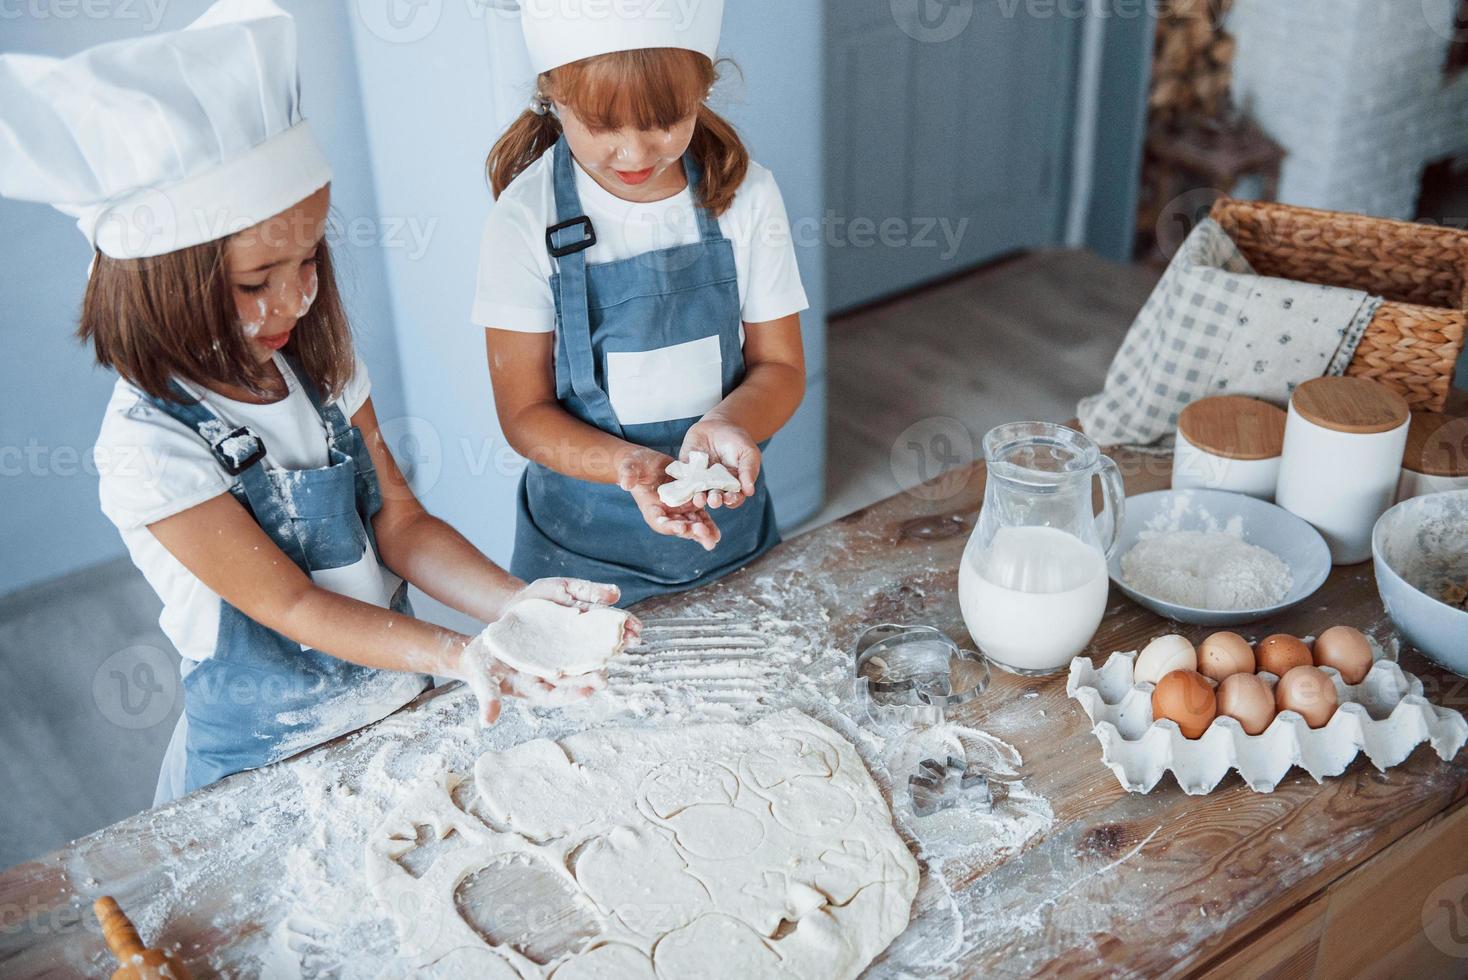 concentrando-se em cozinhar. filhos de família em uniforme de chef branco preparando comida na cozinha foto